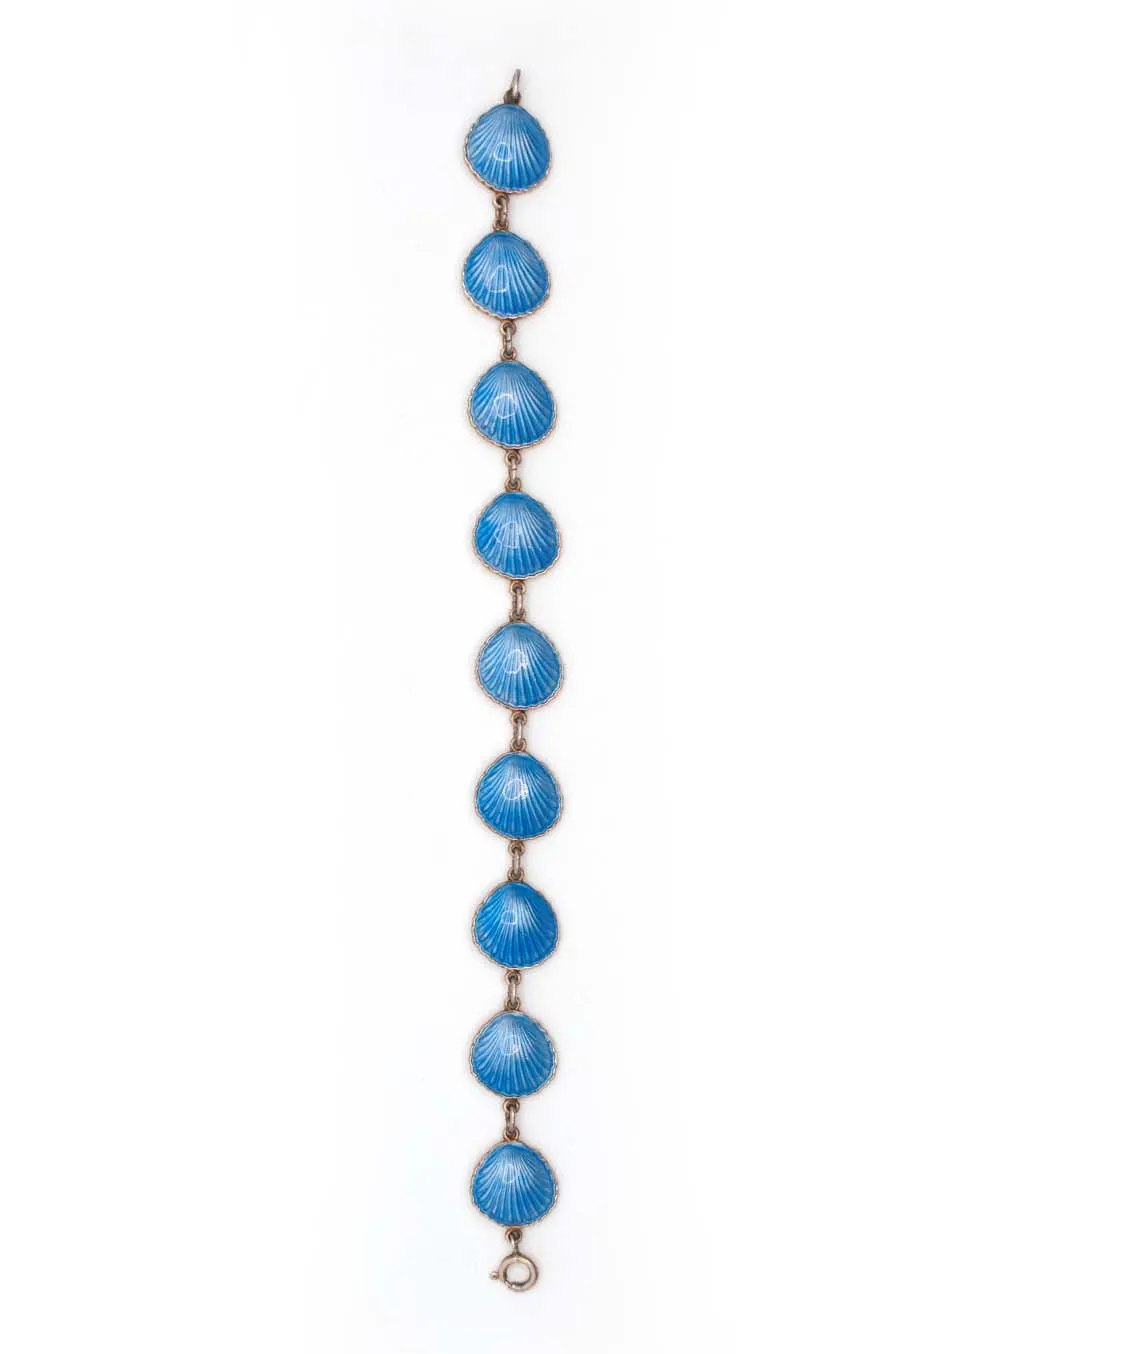 Blue enamel shell bracelet by Elvik & Co top view